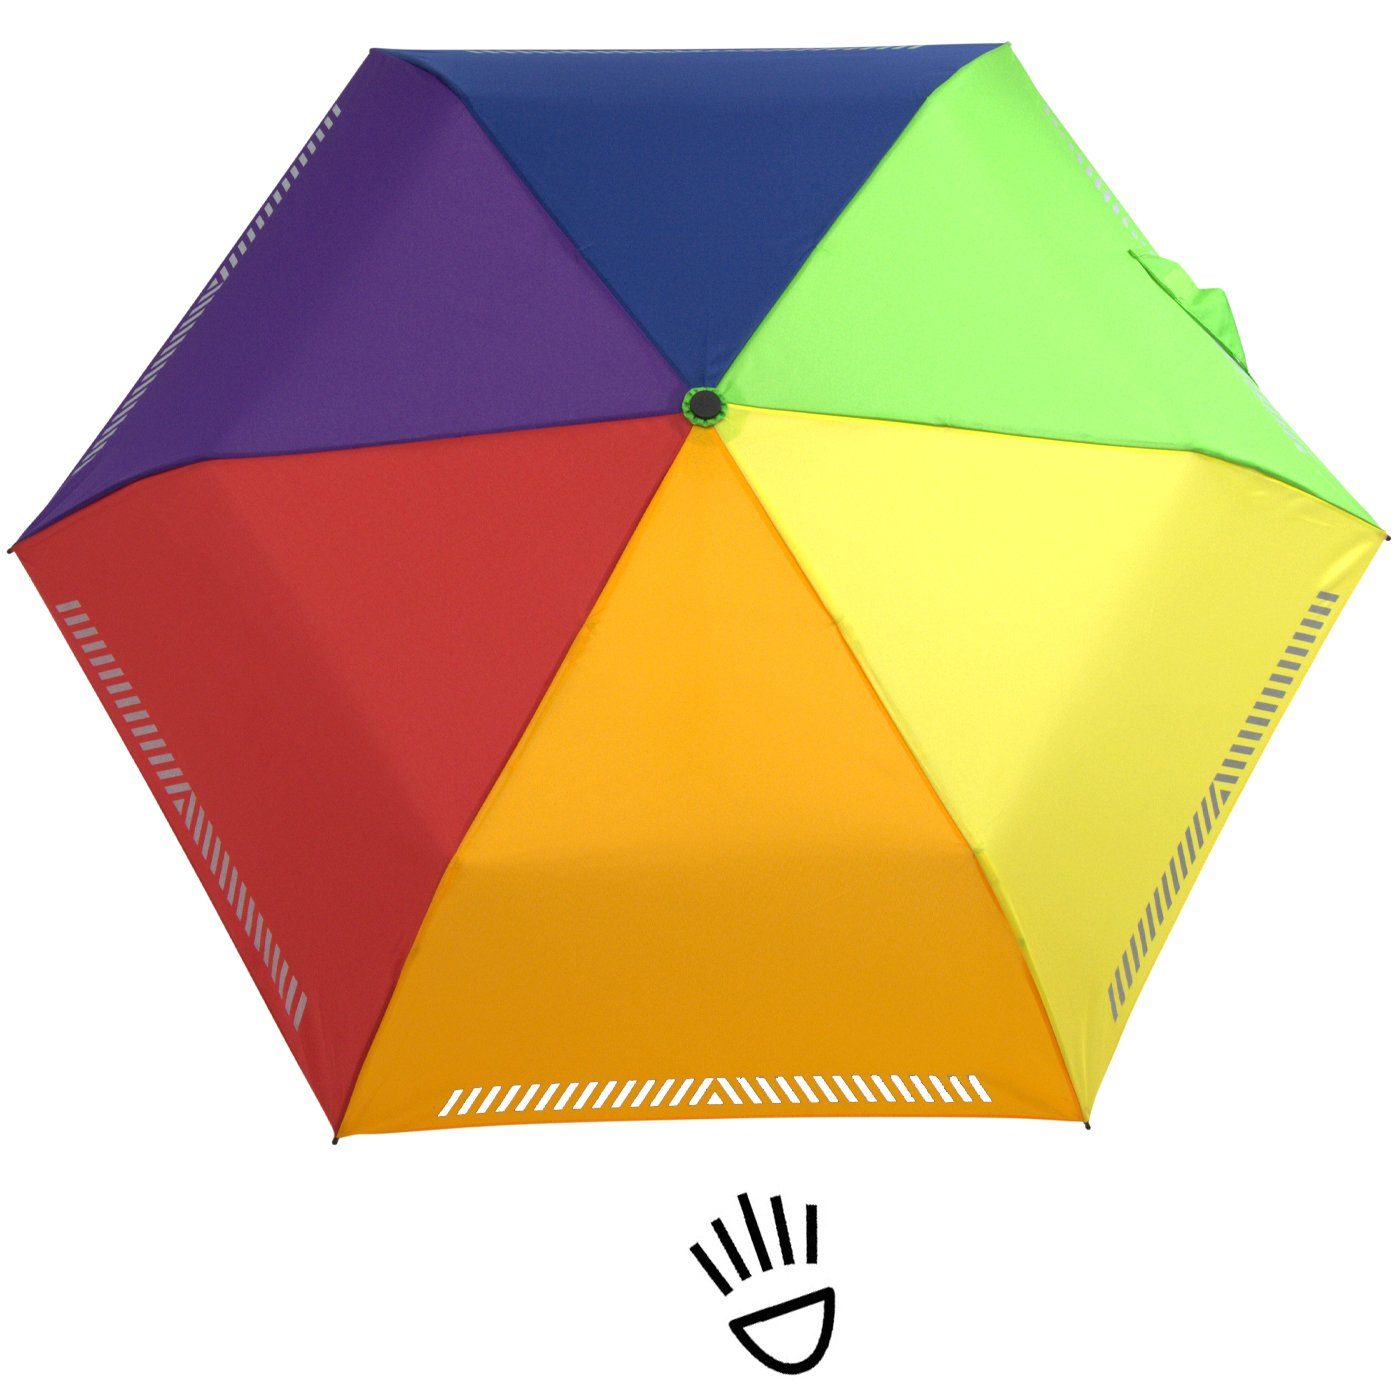 Taschenregenschirm Kinderschirm Auf-Zu-Automatik, mit Sicherheit iX-brella Reflex-Streifen reflektierend, Regenbogen - durch